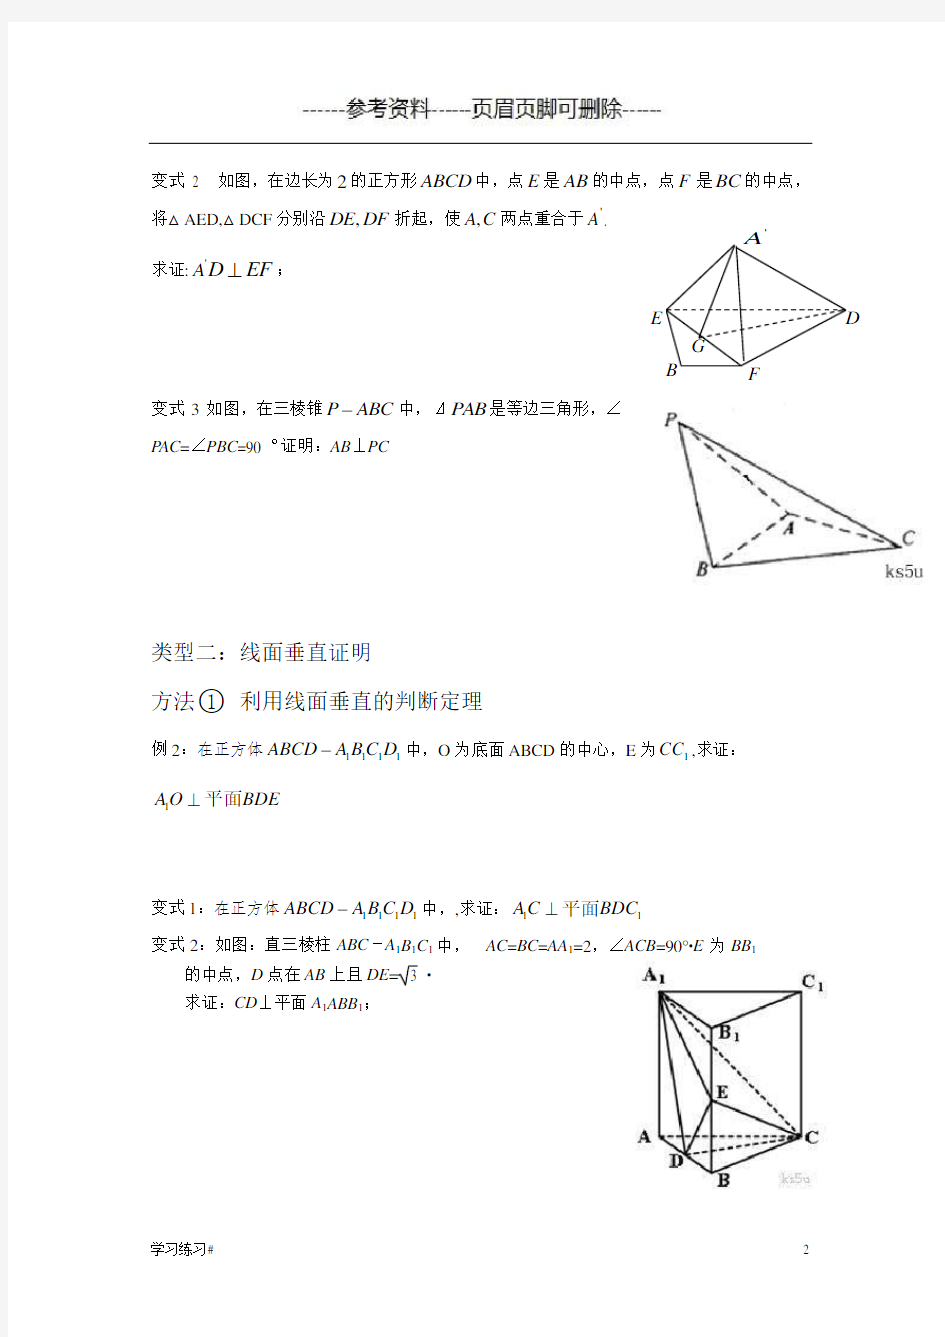 立体几何垂直证明题常见模型及方法(考试学习)